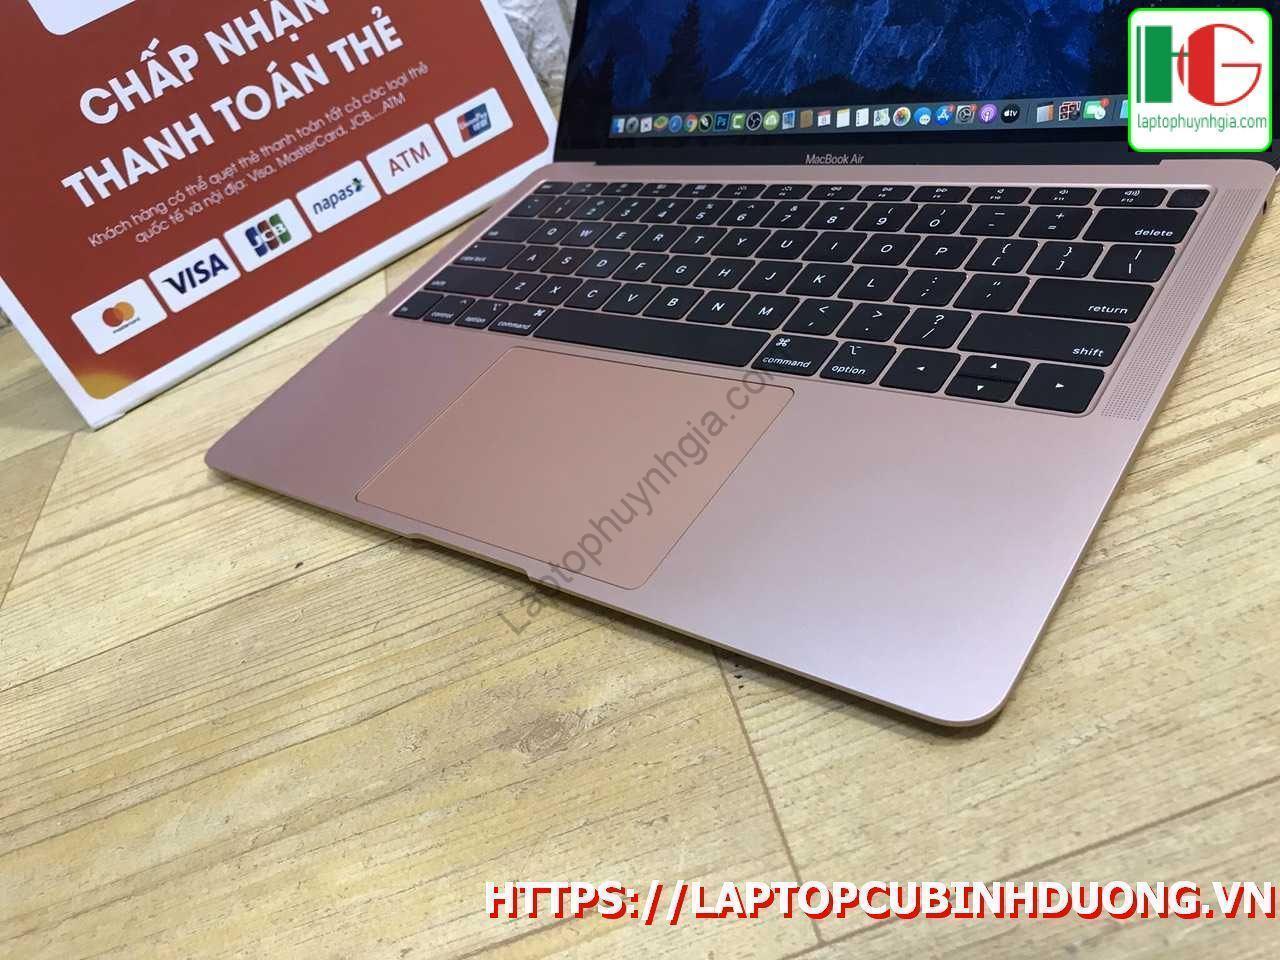 Macbook Air 2018 I5 8g Ssd 128g Laptopcubinhduong.vn 5